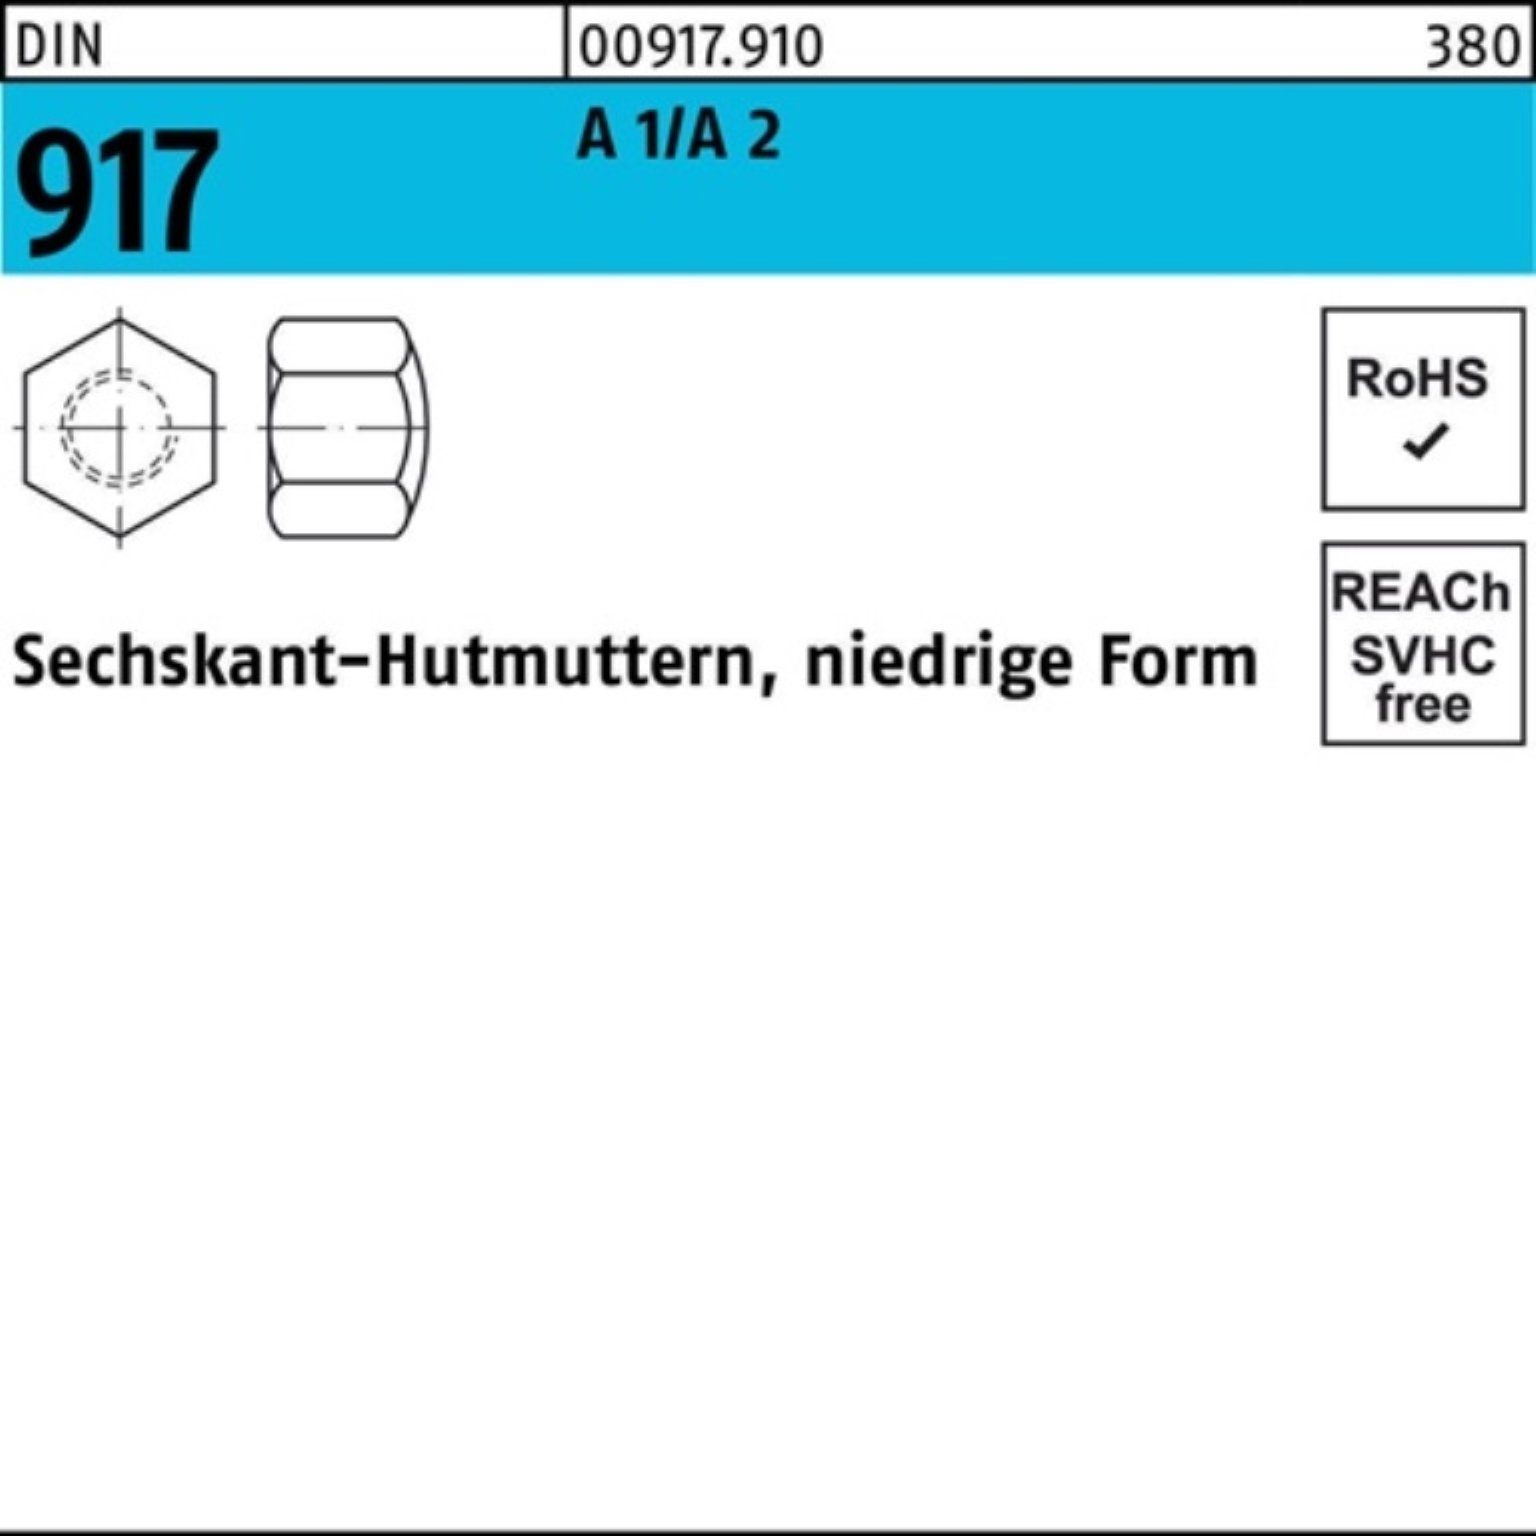 Stüc A Reyher Pack 100er 2 1/A Sechskanthutmutter Hutmutter FormM6 niedrige 917 DIN 50